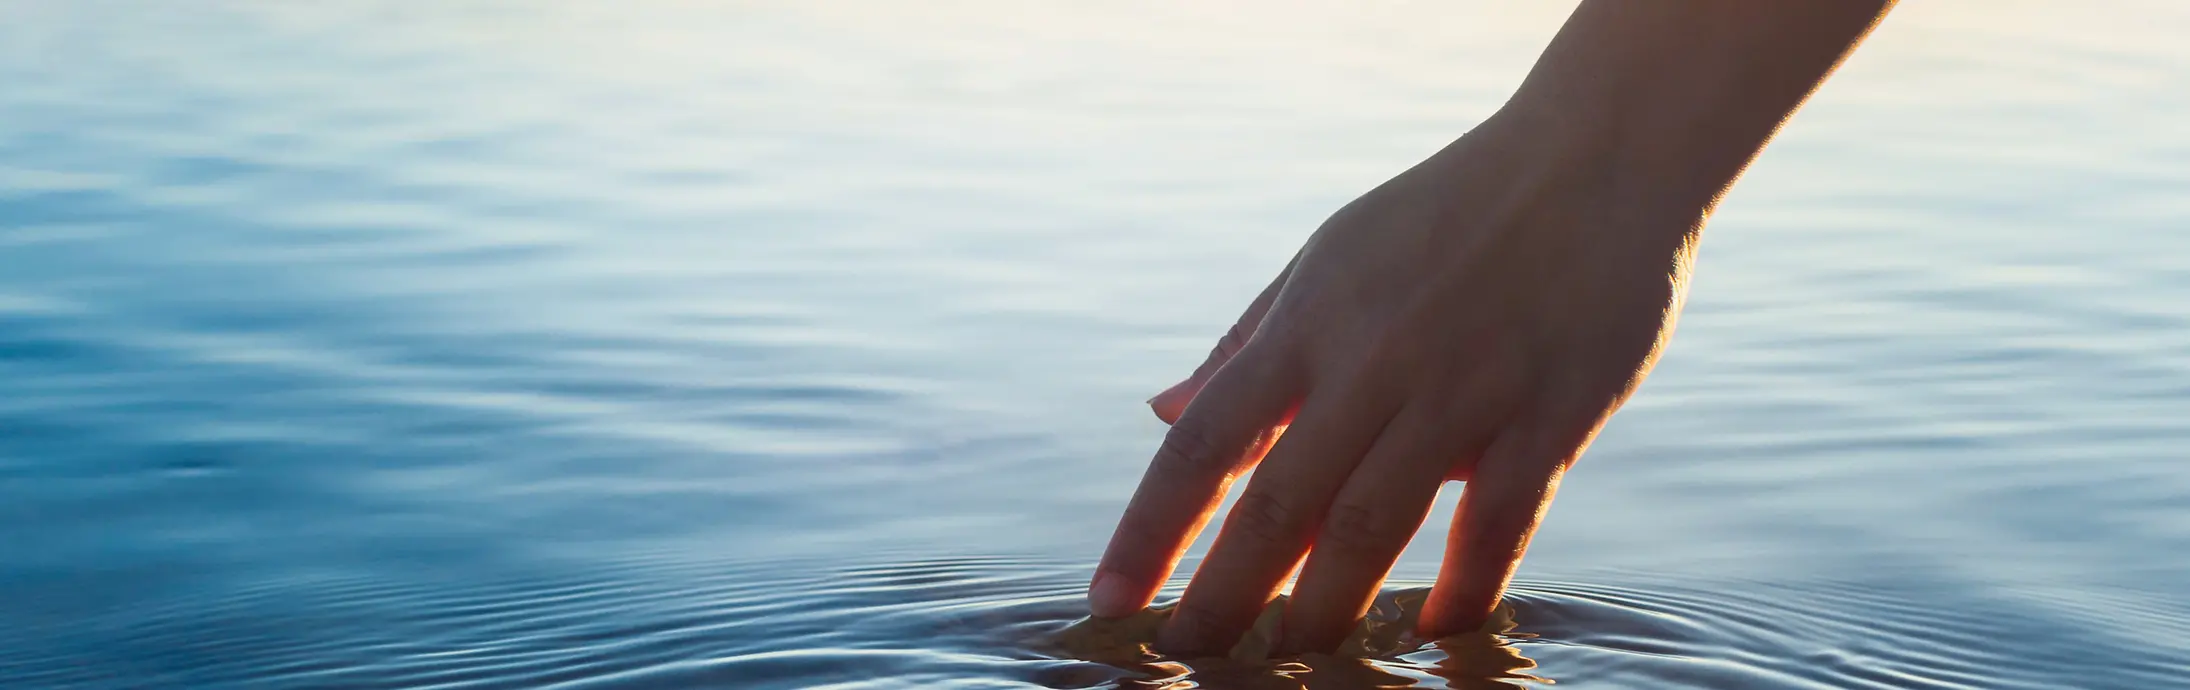 Uma mão passa por uma superfície de água calma com o horizonte de fundo